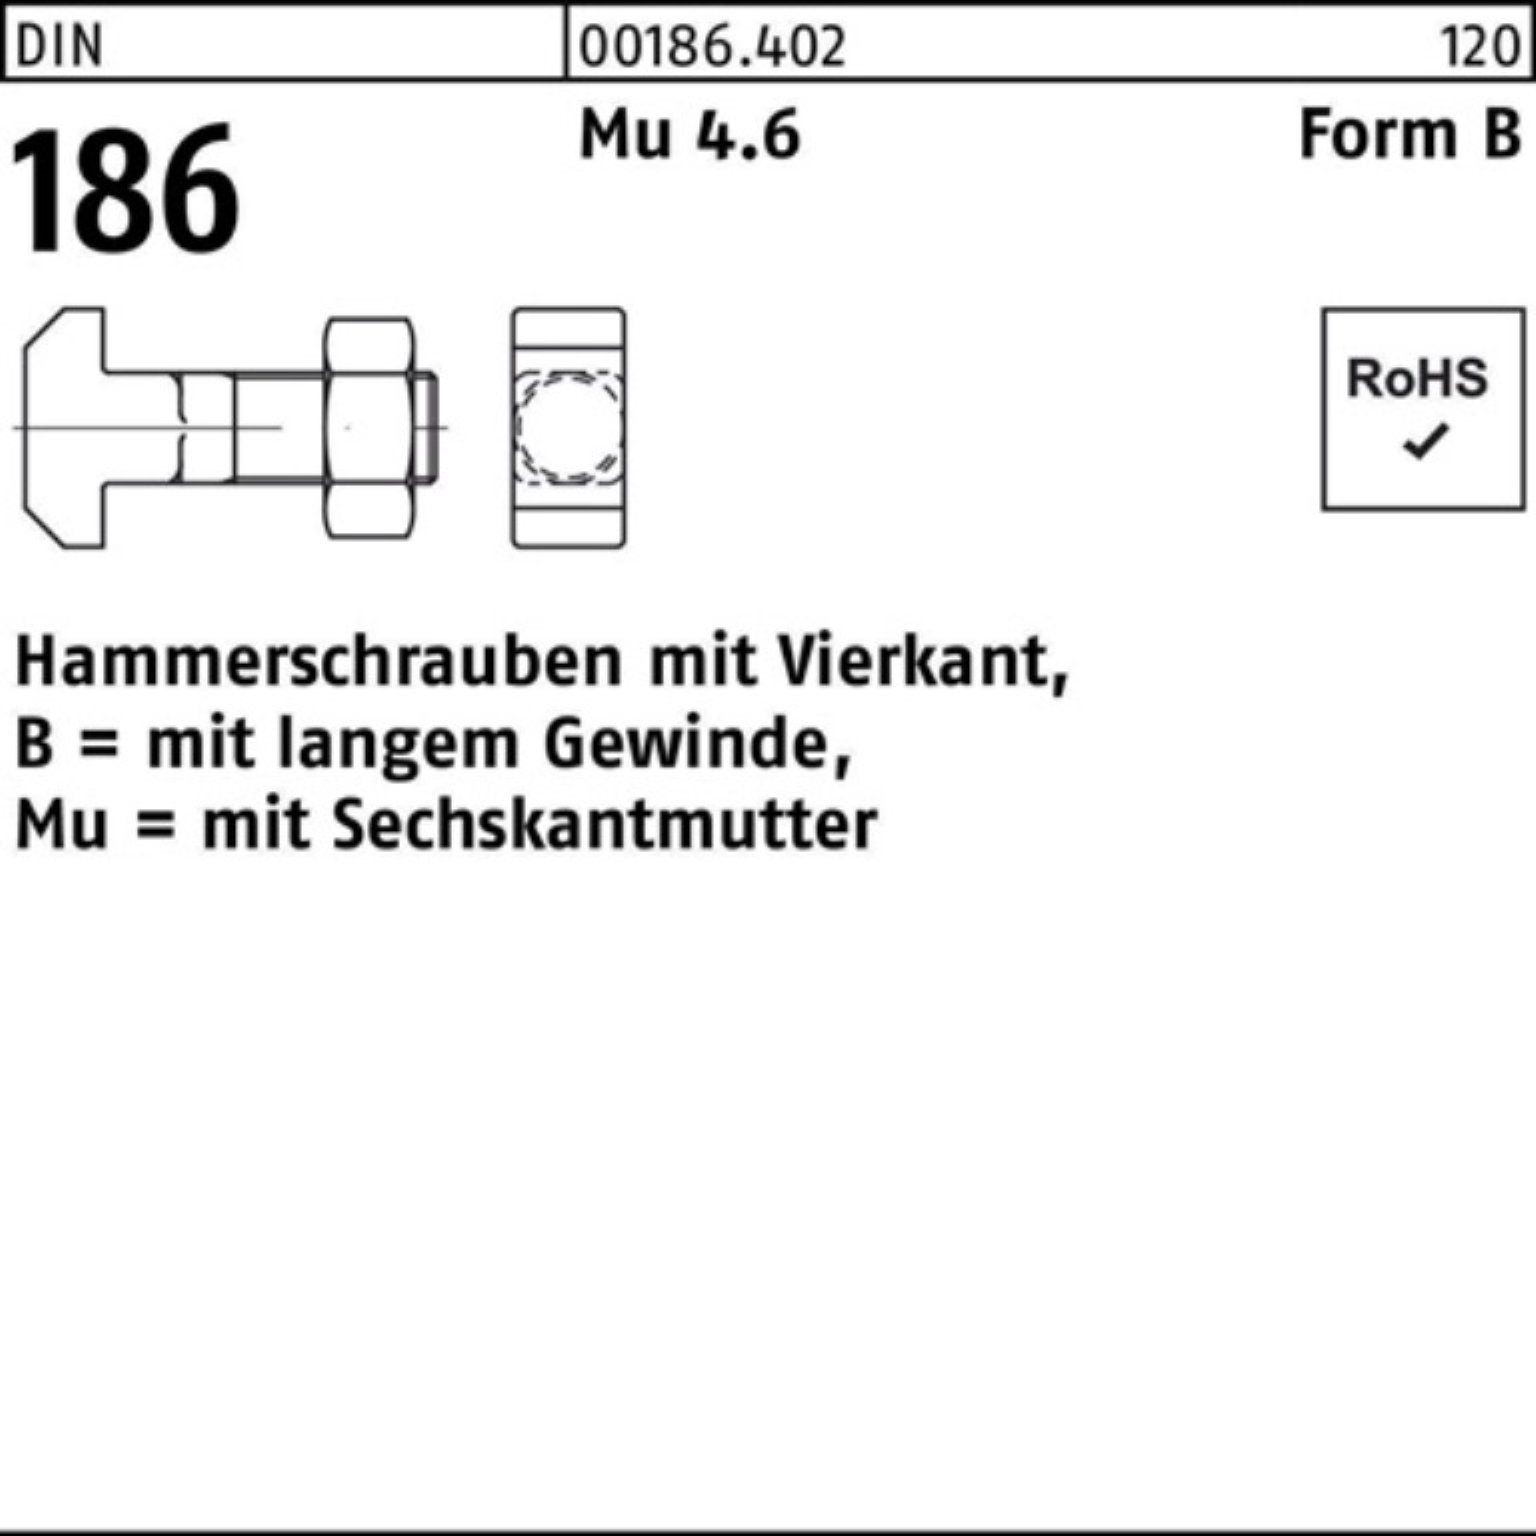 Reyher Schraube 100er Pack Hammerschraube DIN 186 FormB Vierkant 6-ktmutter BM 24x 110